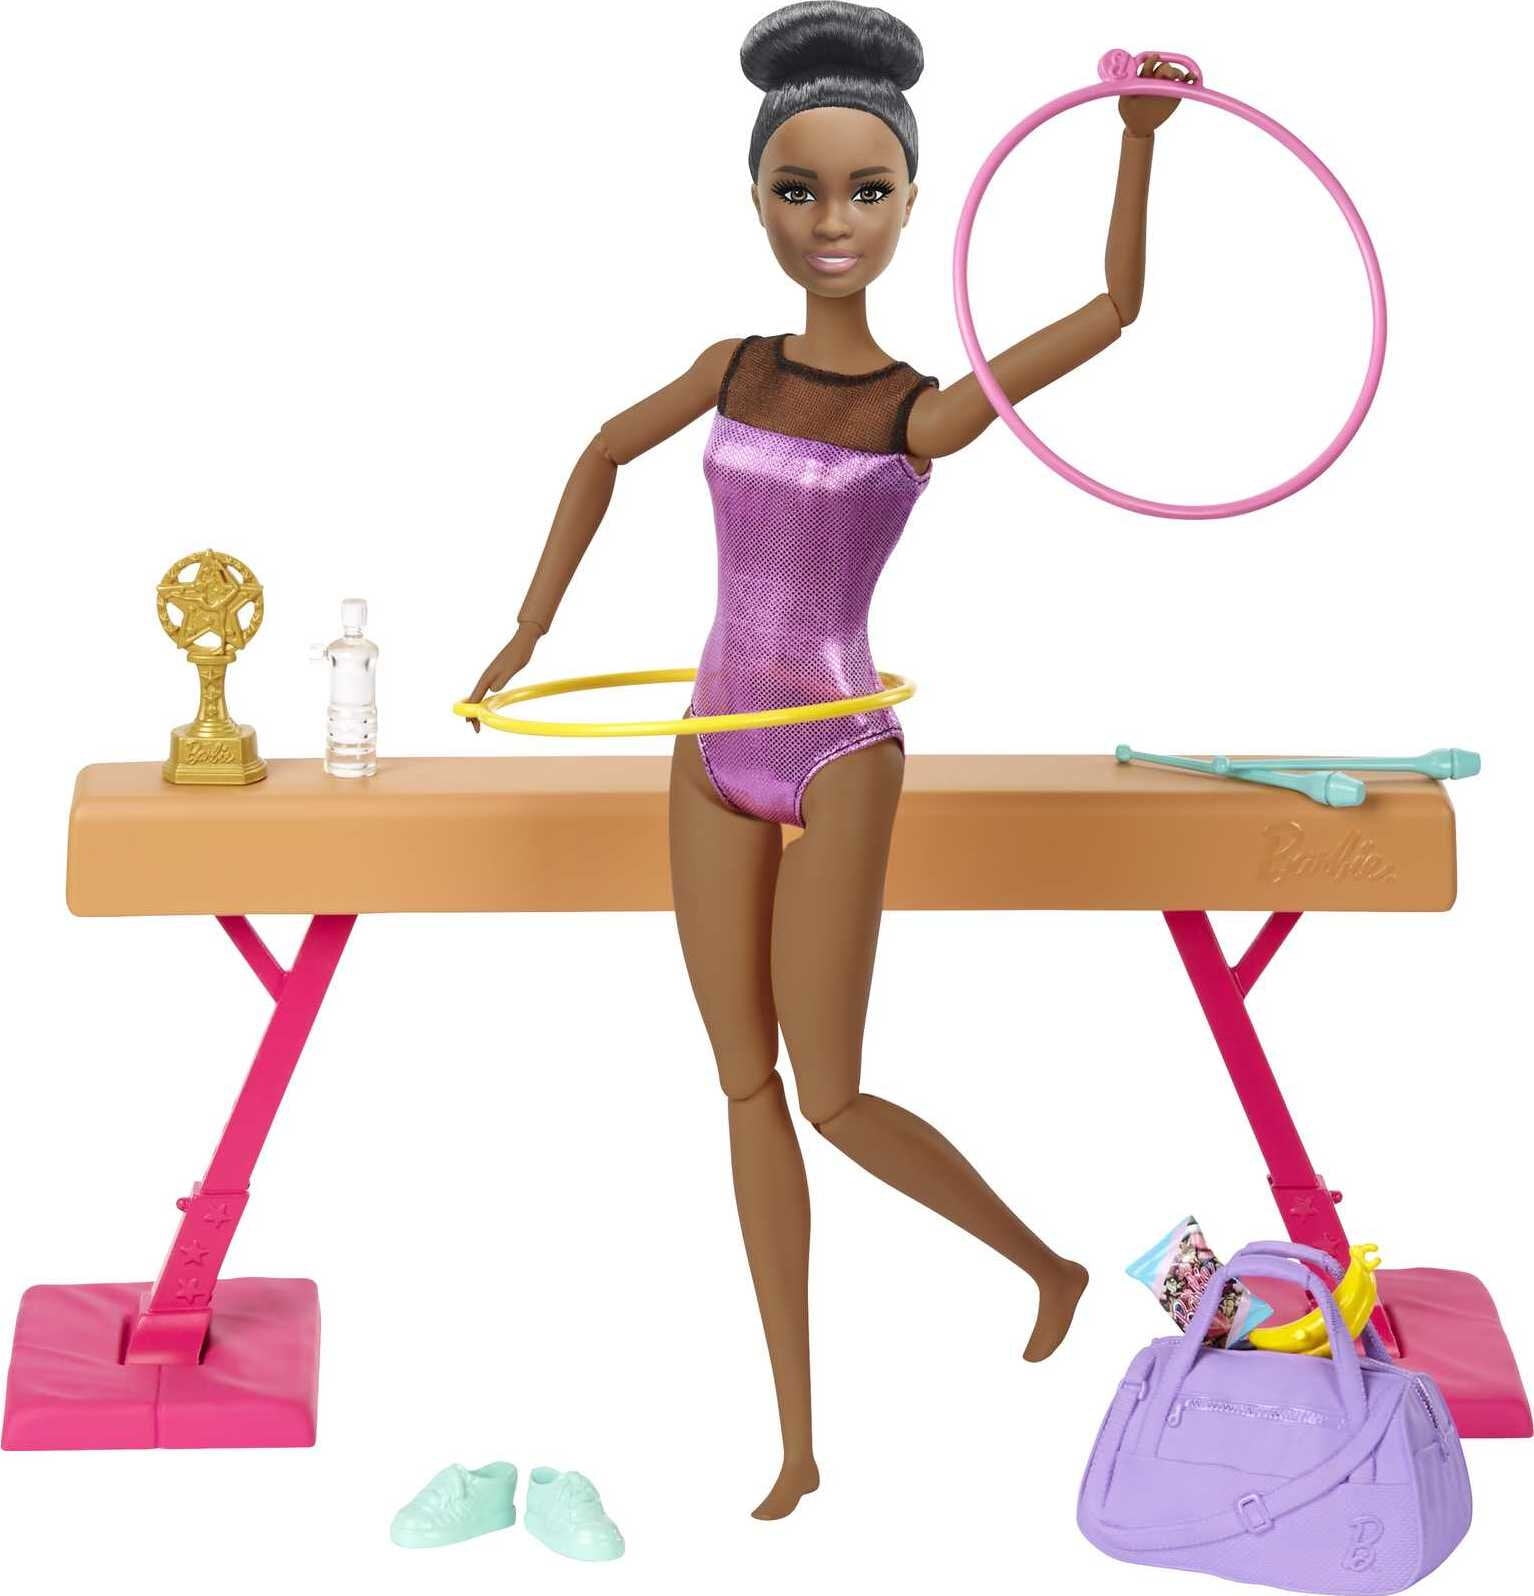 Barbie Gymnastics Playset Fashion doll Mattel Toys New 